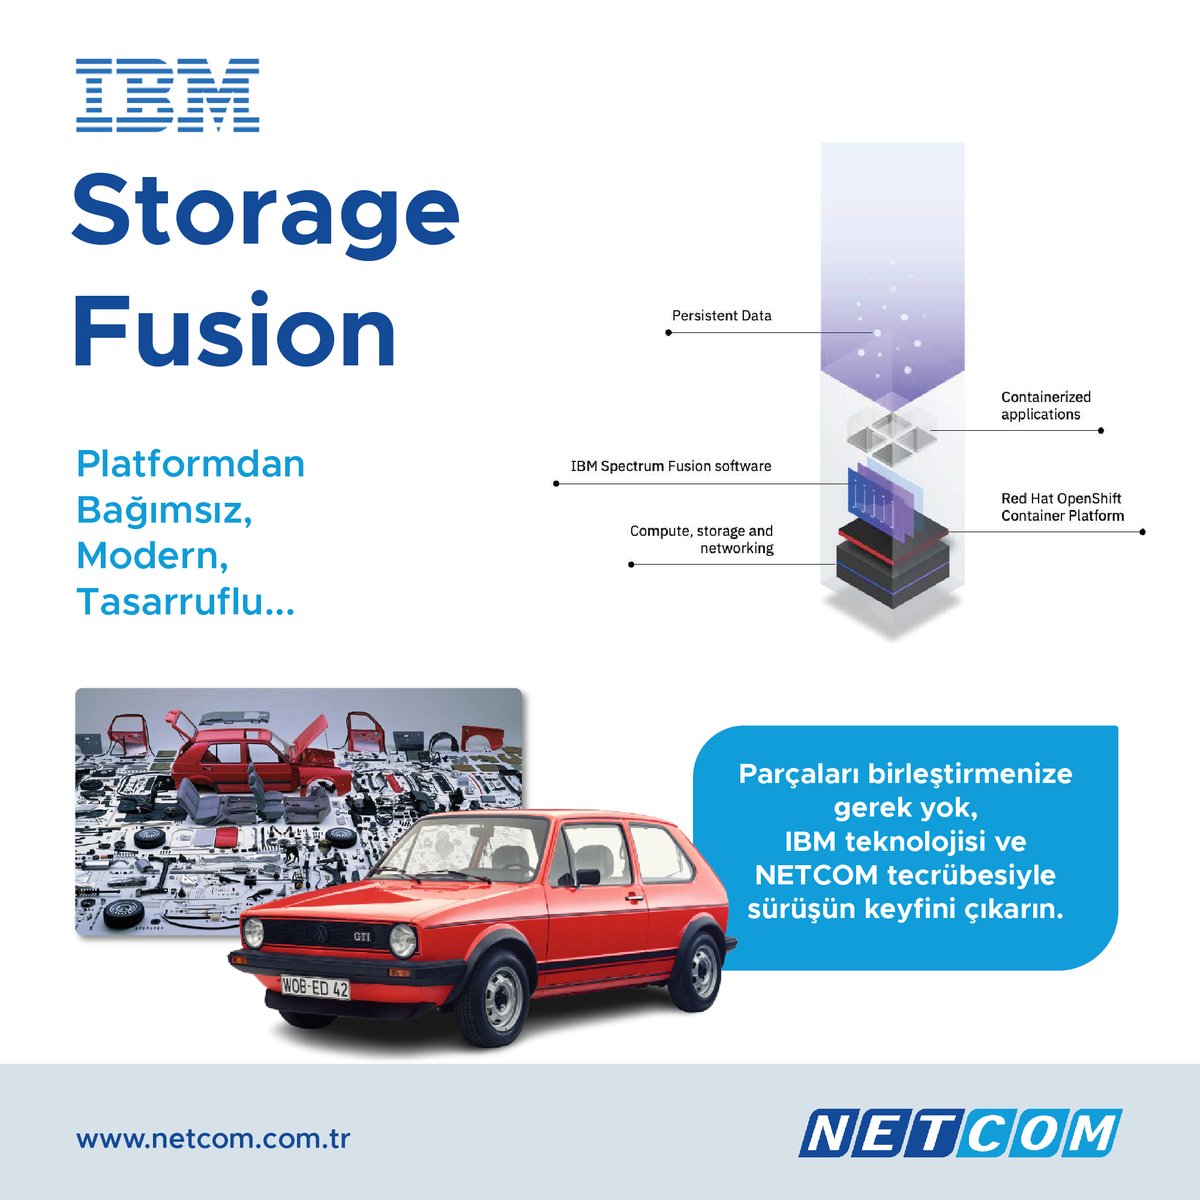 IBM Storage Fusion, kurumların bulut ortamlarının genelinde sorunsuz veri erişimi ve yönetimi sağlar. Hibrit bulut altyapısını anlamaya ihtiyaç duymadan basit, tutarlı ve yüksek düzeyde ölçeklenebilir bir platformla bulut tabanlı teknolojilerin kullanımına yardımcı olur.